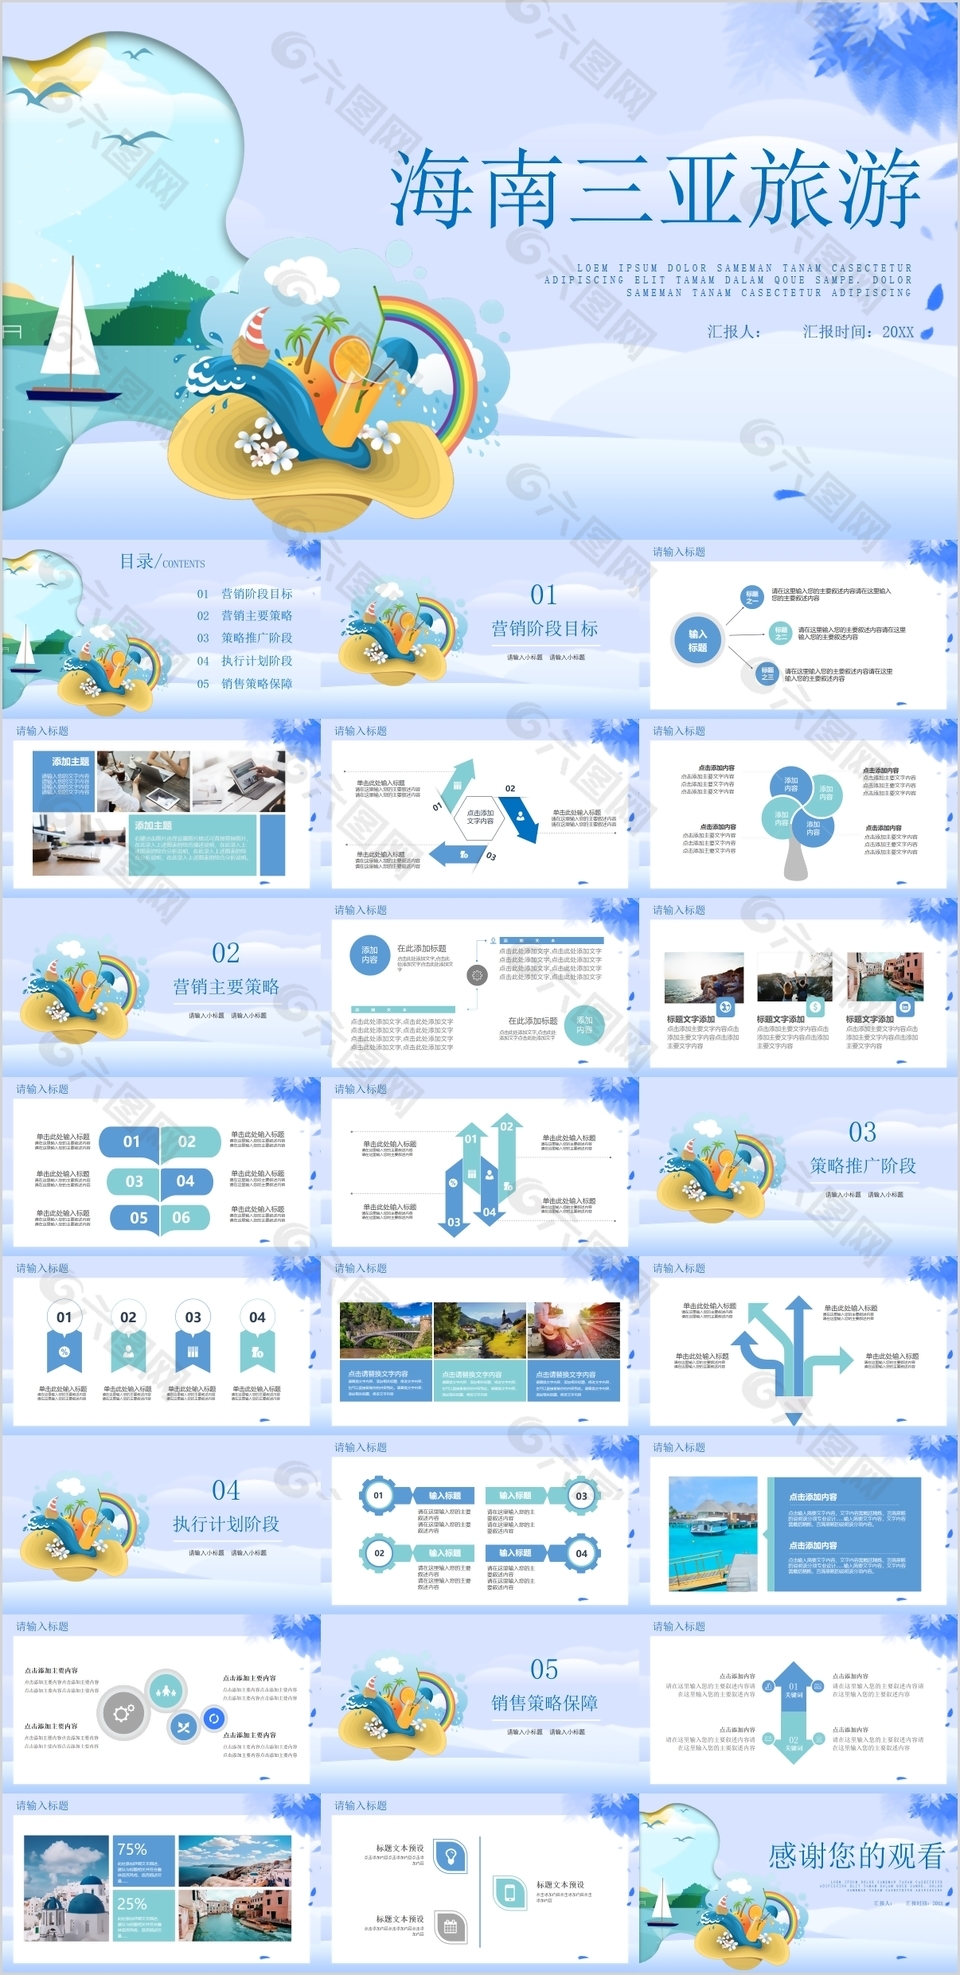 海南三亚旅游营销策划方案PPT模板